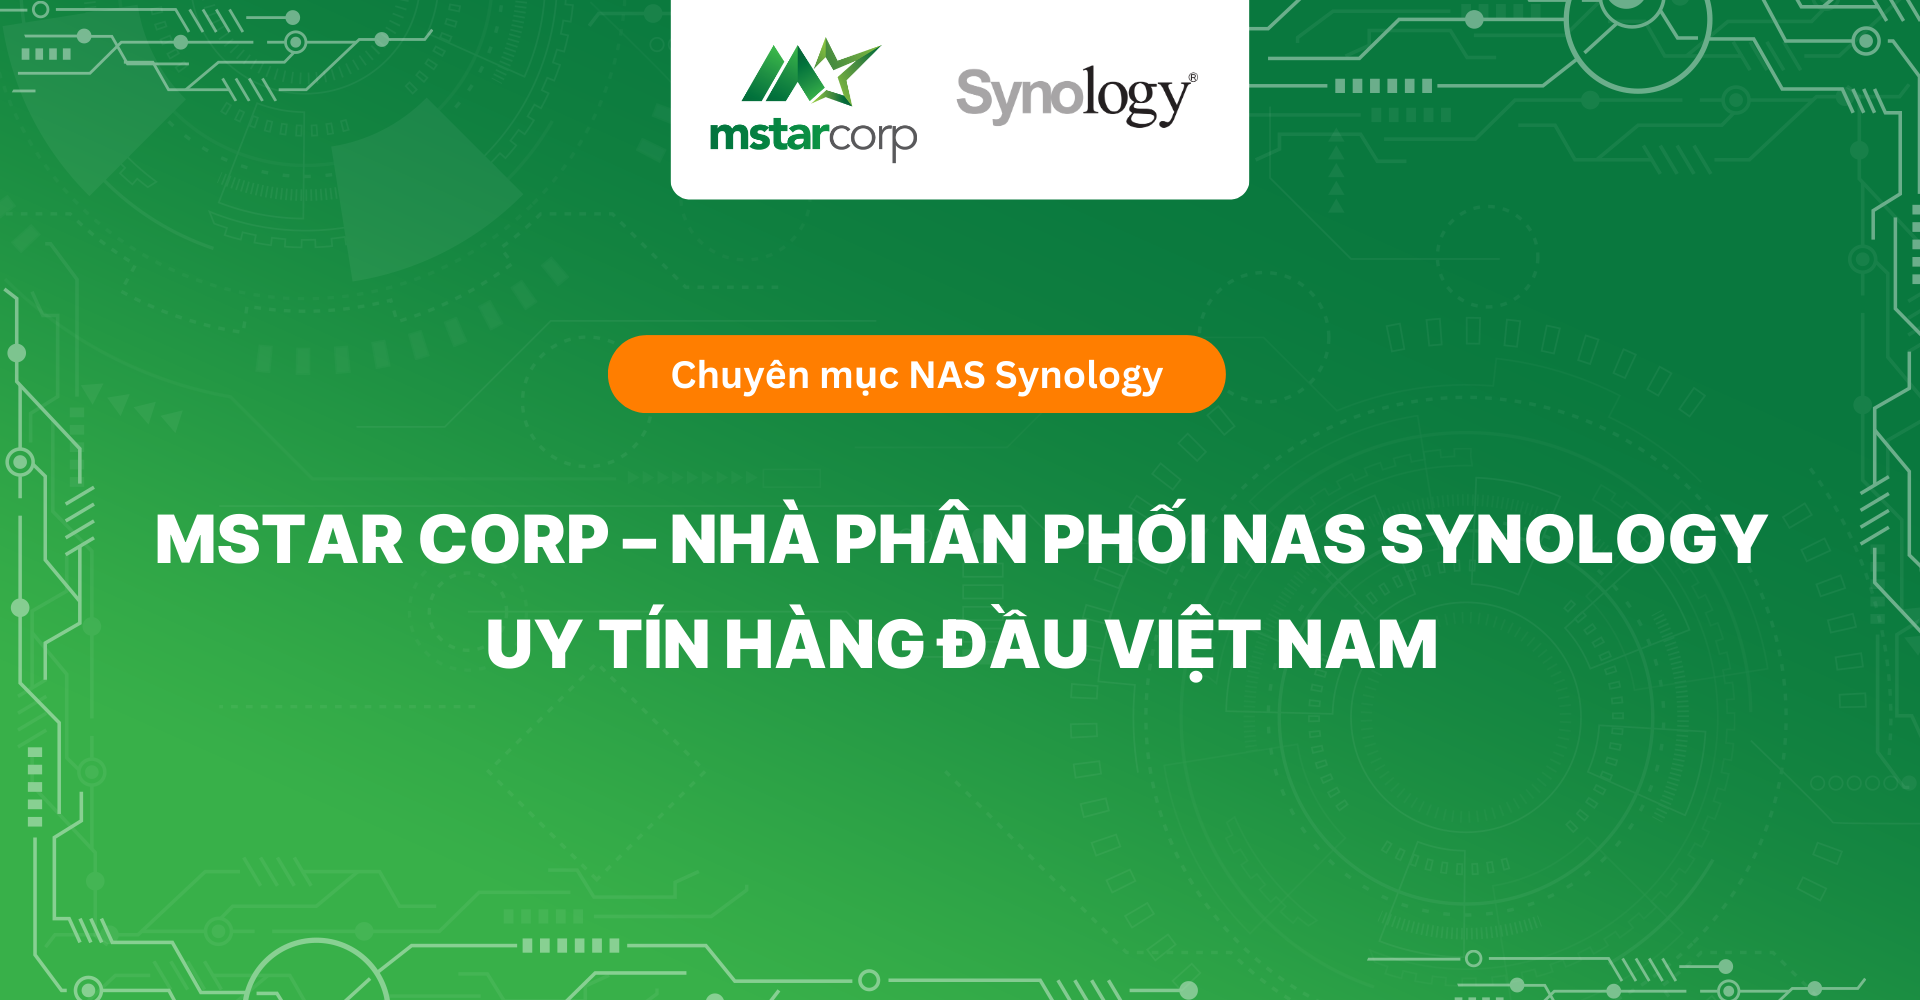 Mstar Corp - Nhà phân phối NAS Synology uy tín hàng đầu Việt Nam